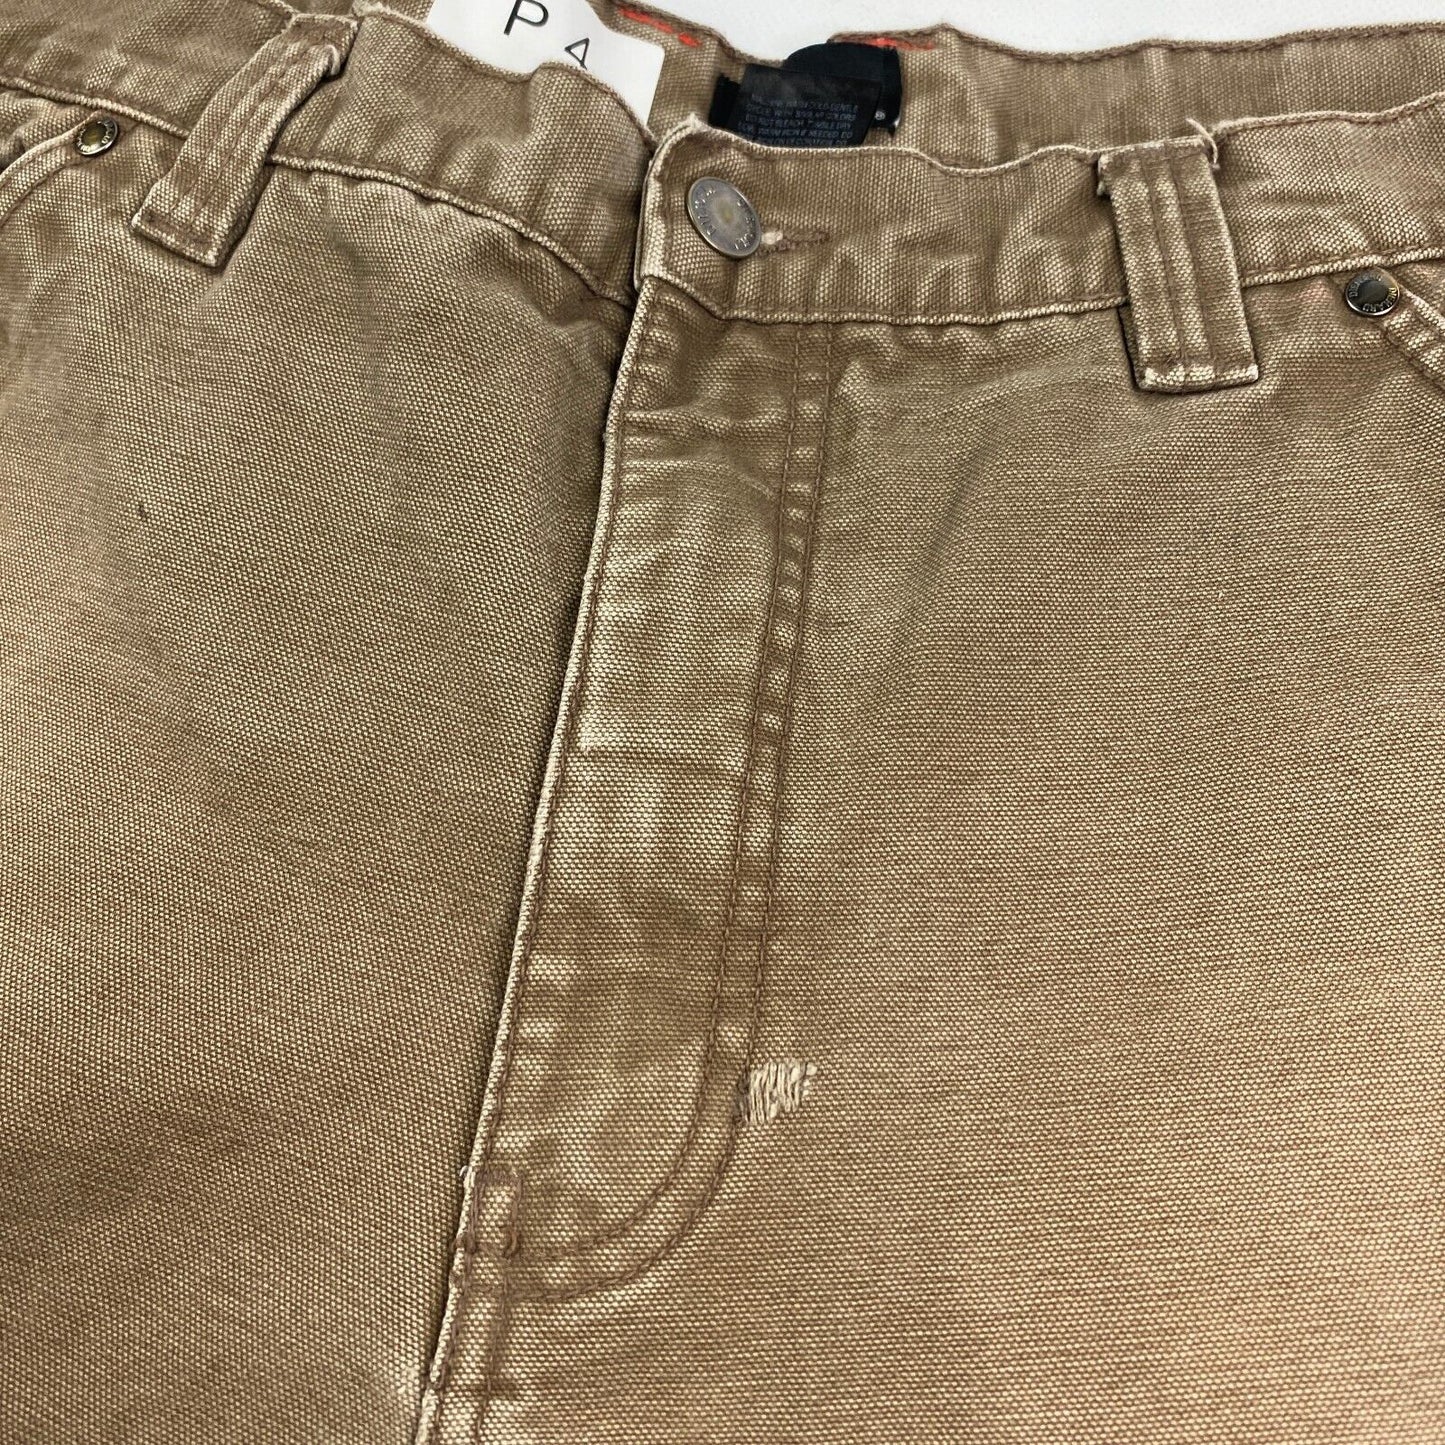 VINTAGE Die Hard Brown Carpenter Workwear Loose Fit Pants sz W40 L30 Mens